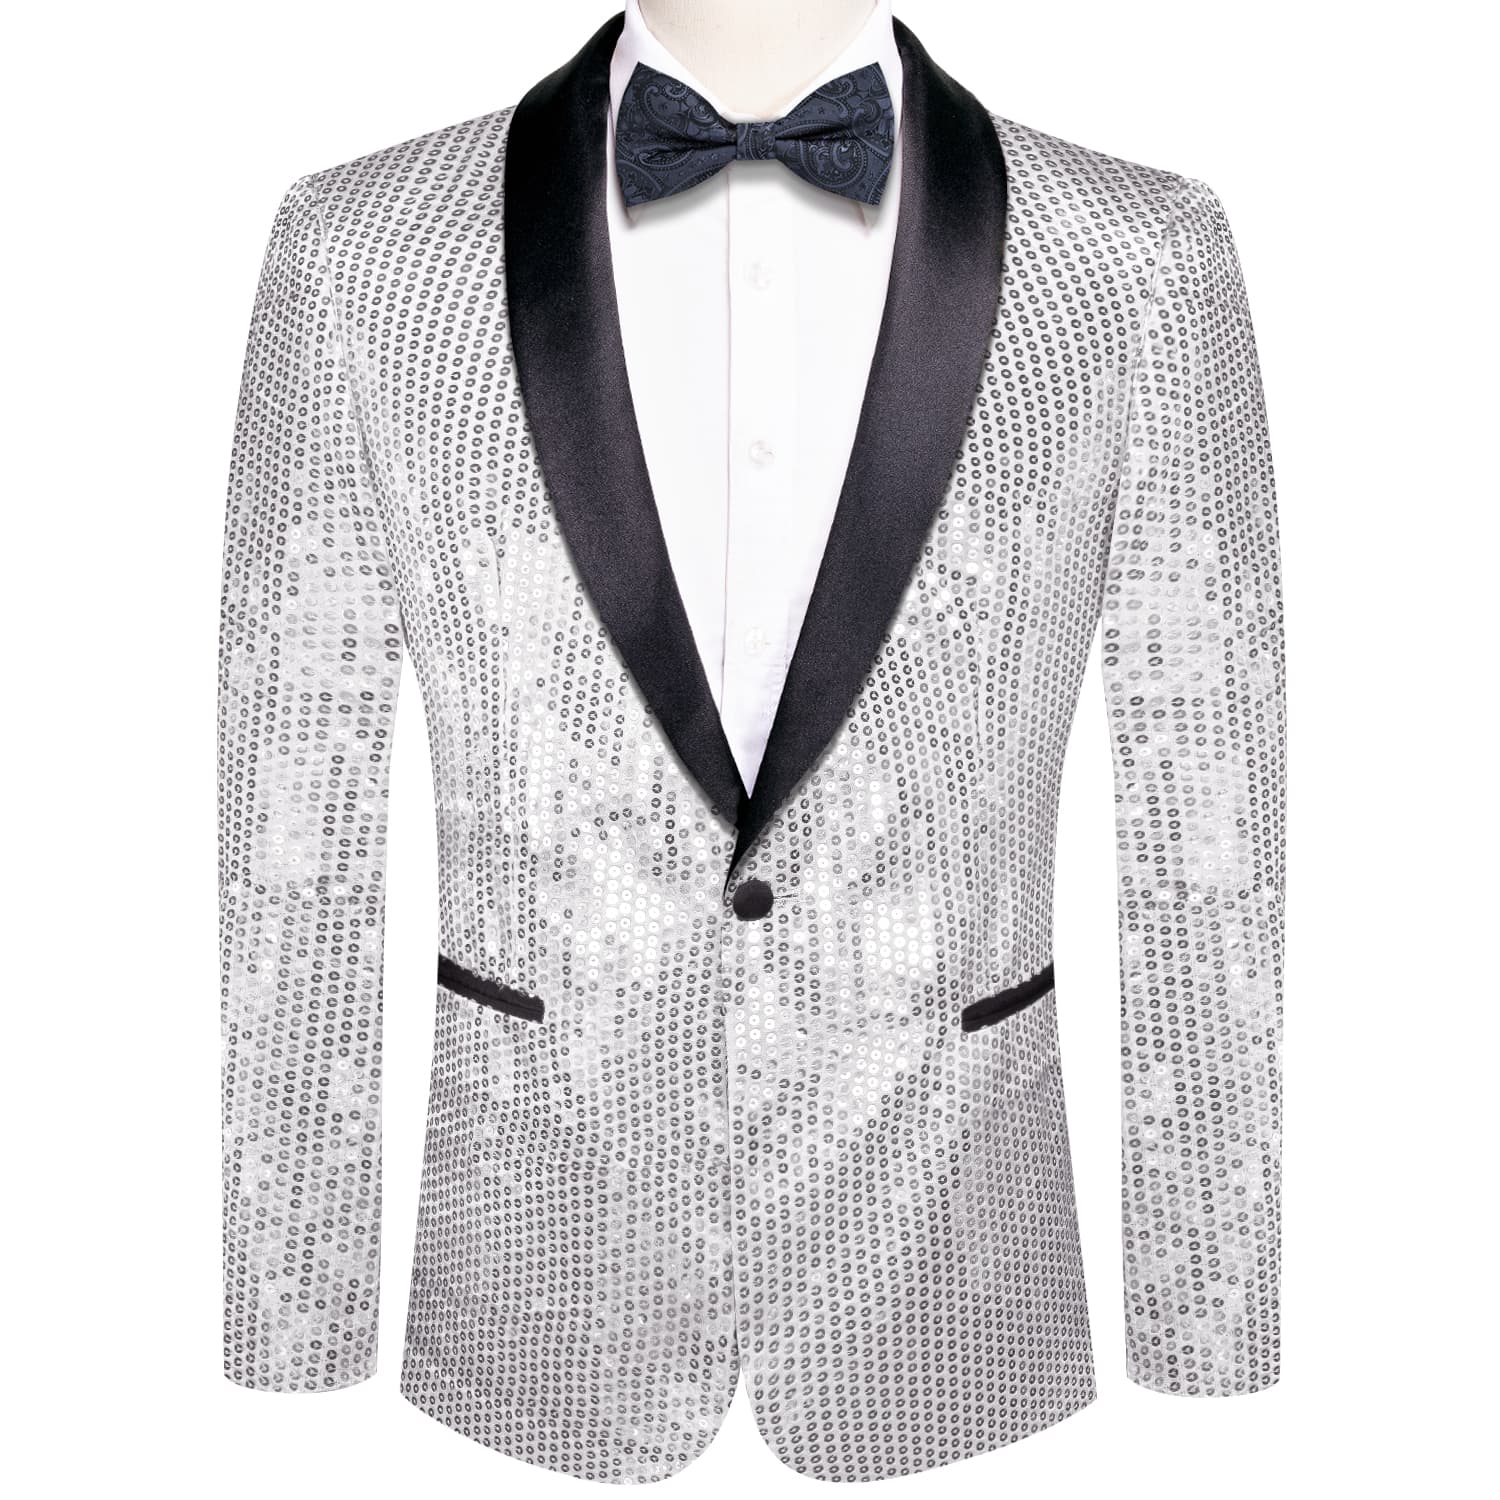 Sequin Blazer Black Shawl Collar Silver Solid Suit Tie Set